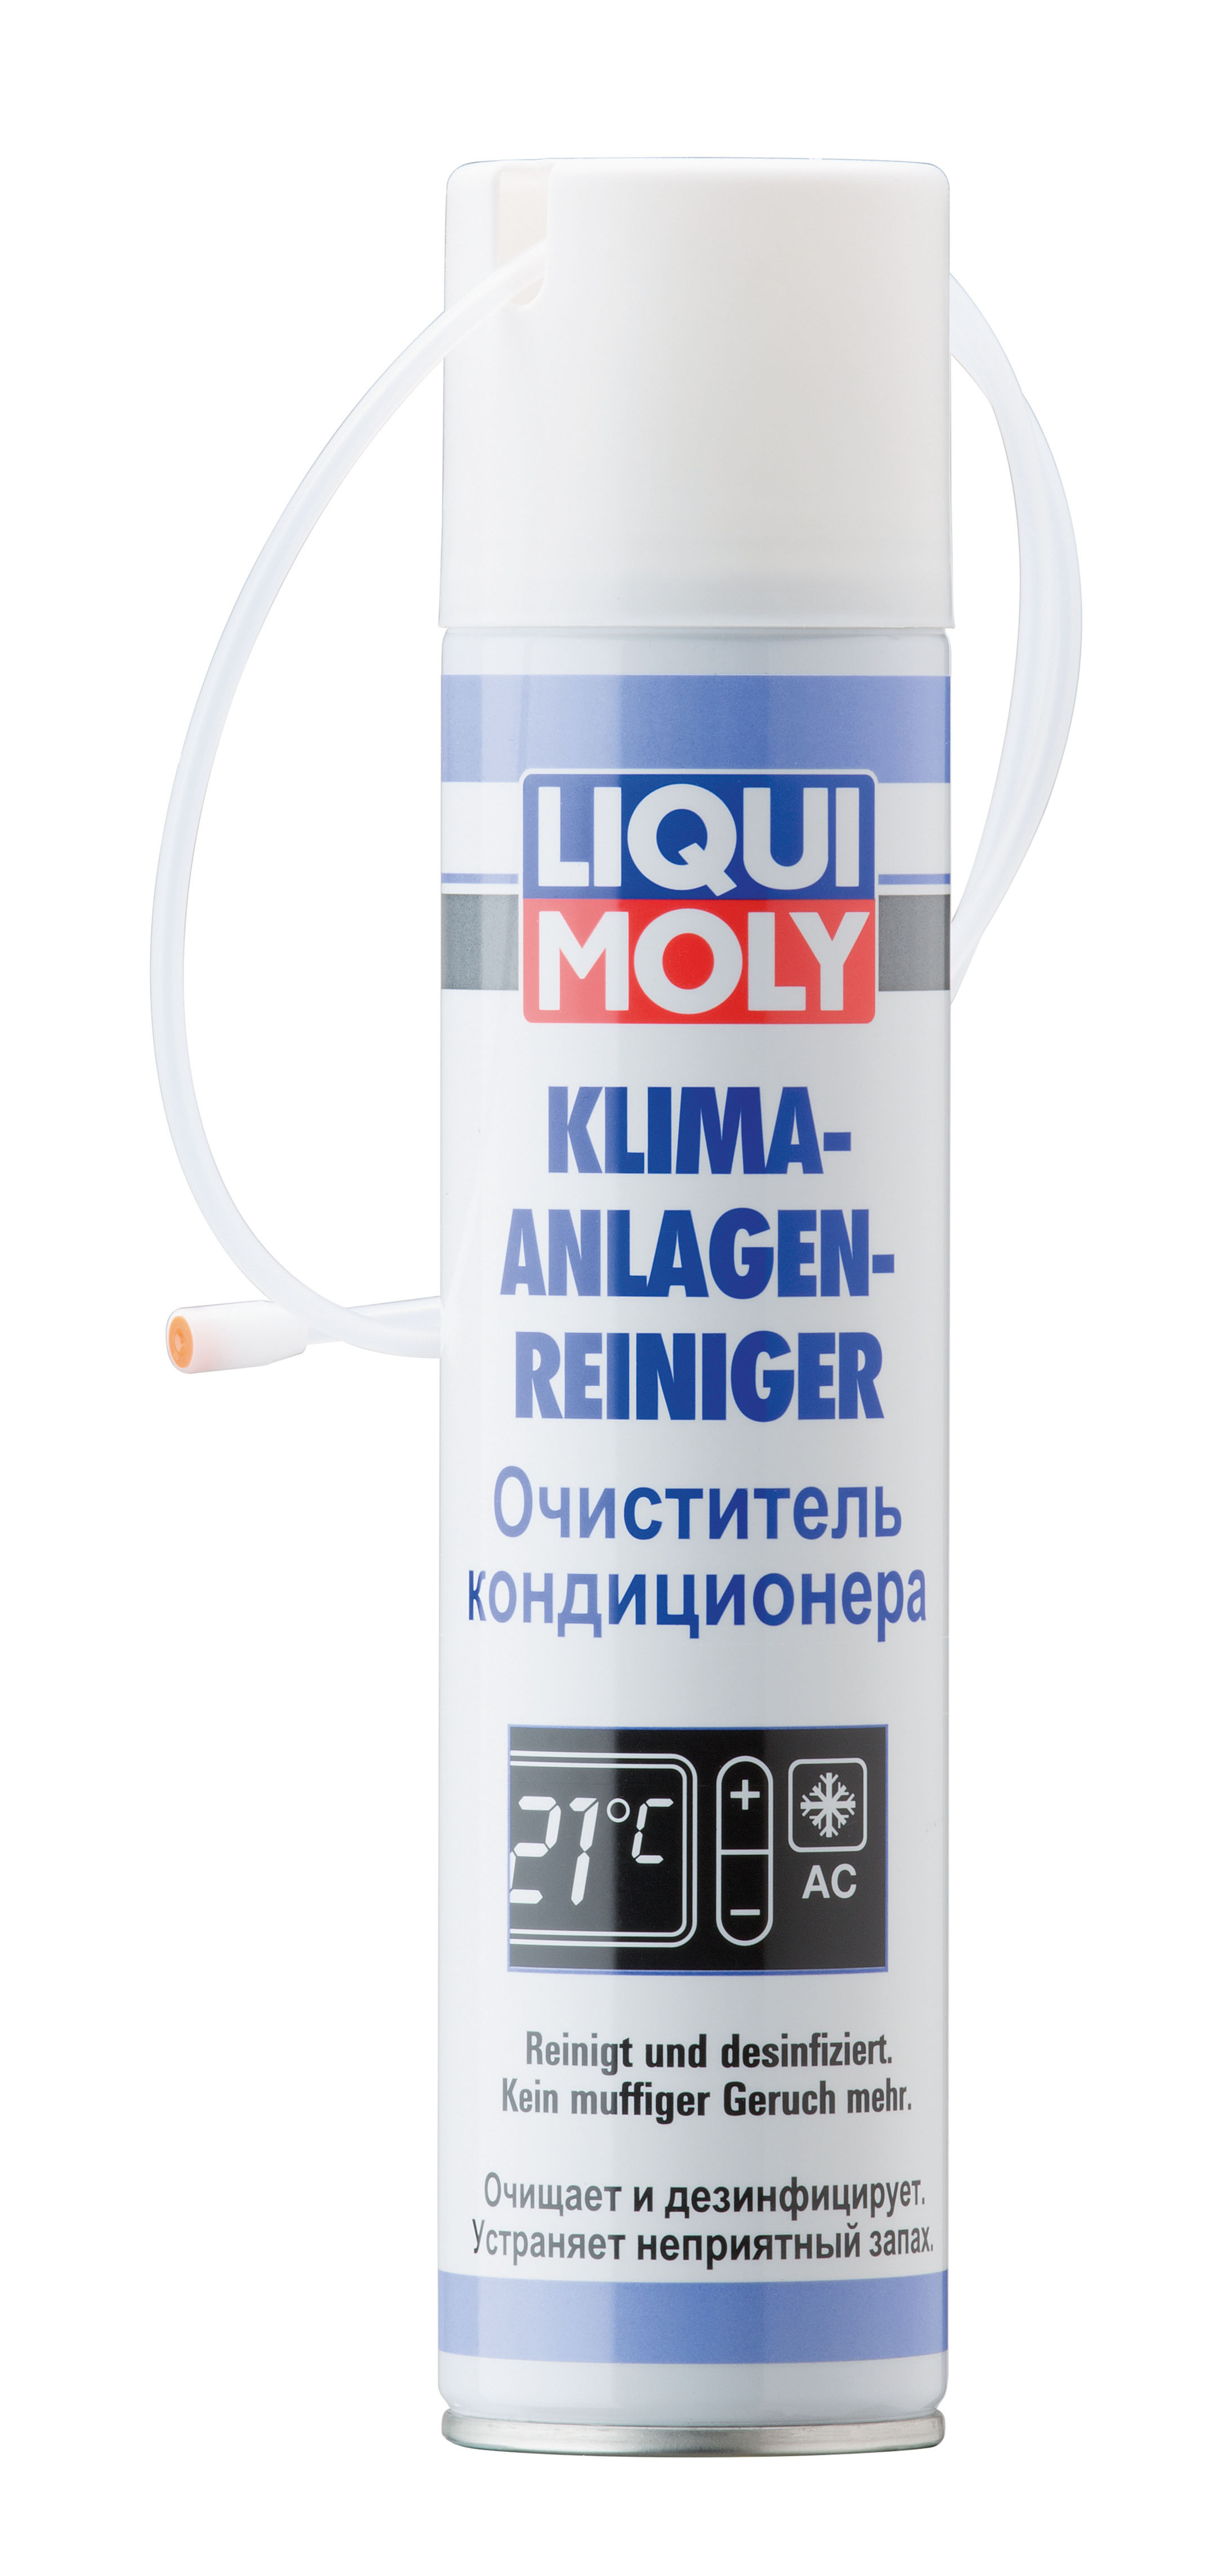 Liqui Moly Klima Anlagen Reiniger Очиститель кондиционера